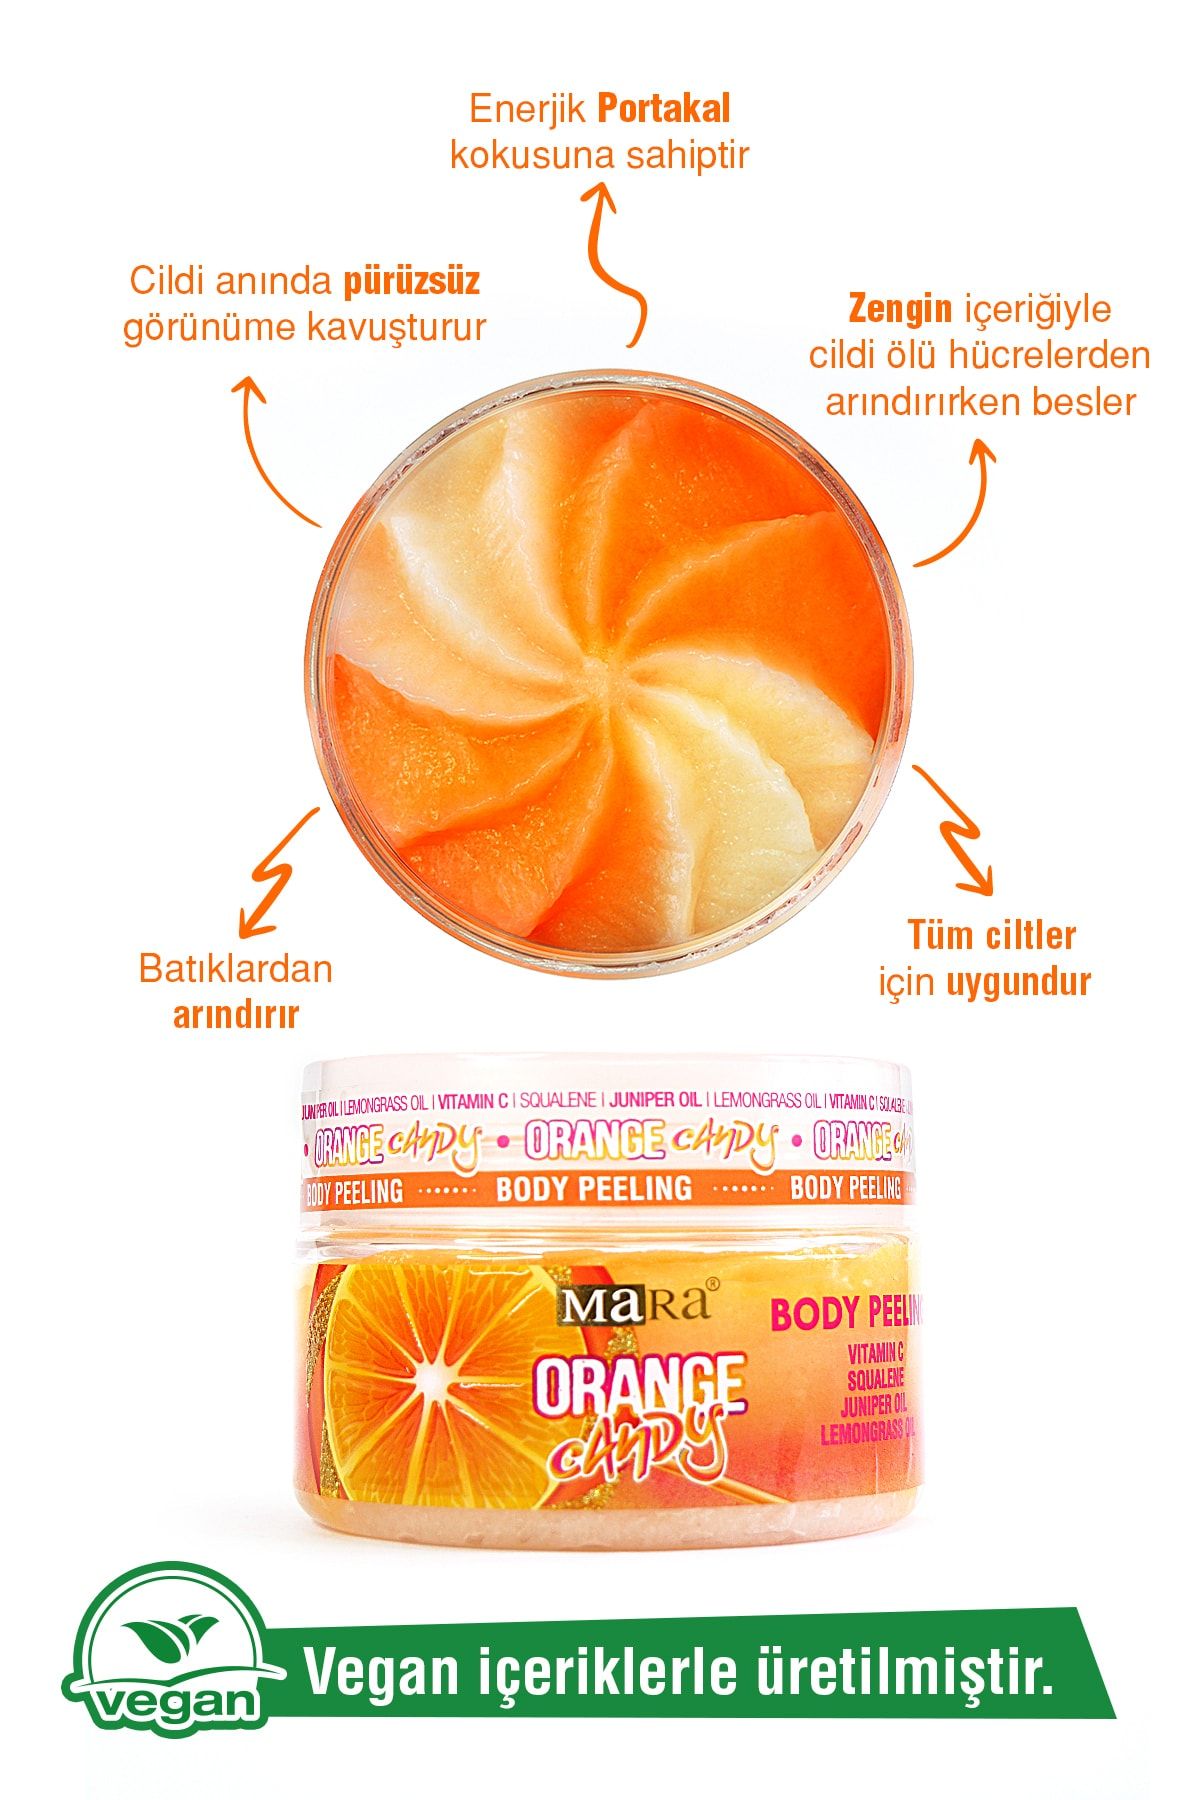 Mara Orange Candy Değerli Yağlar Içeren Portakal Şekeri Vücut Peeling 300 gr